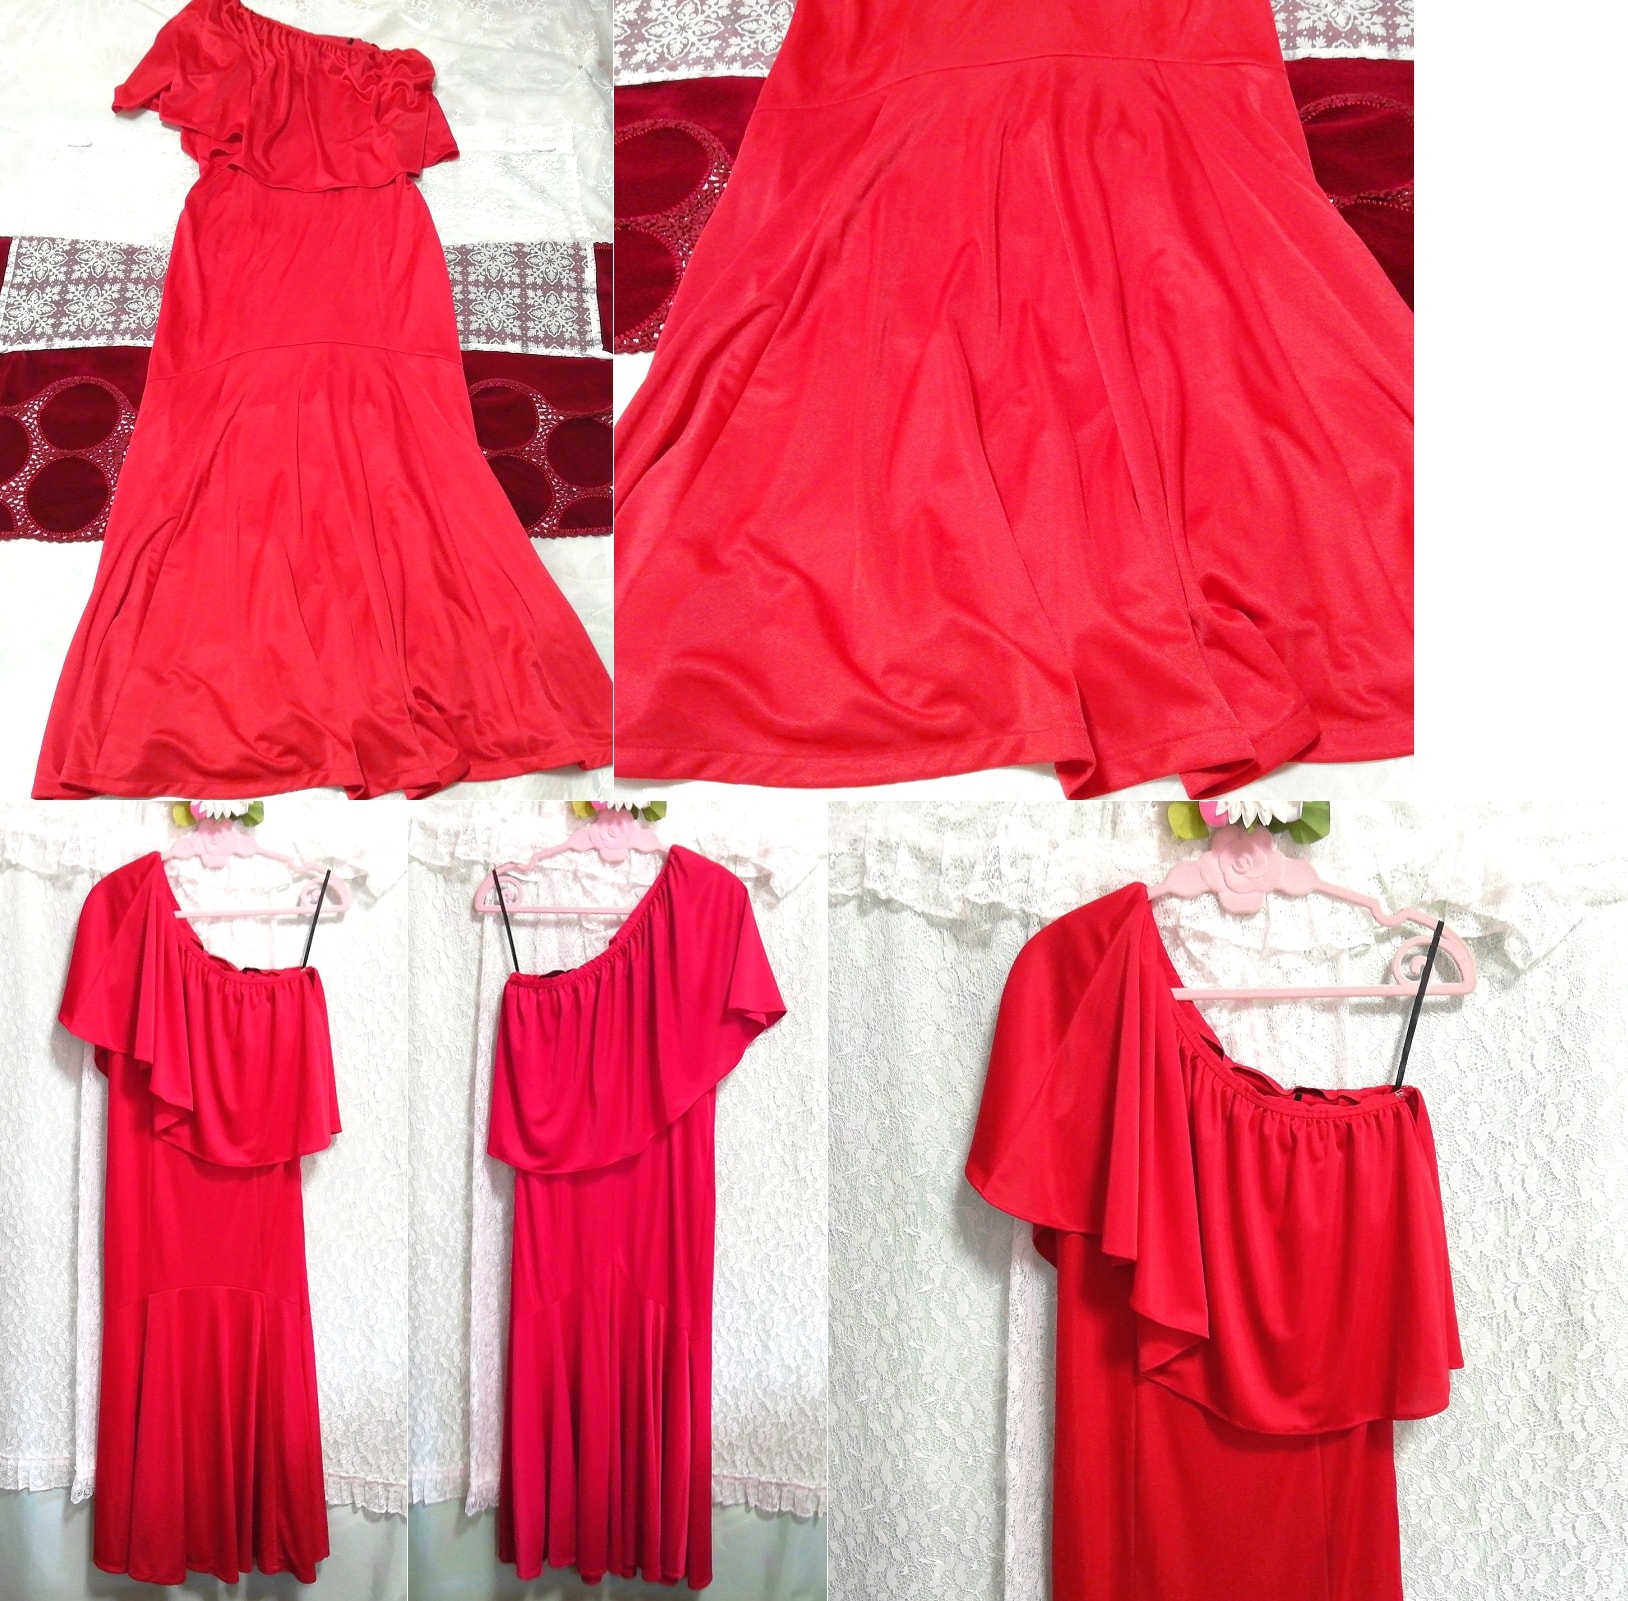 赤マキシローブ ネグリジェ ナイトウェア ノースリーブワンピースドレス Red maxi robe negligee nightwear sleeveless dress, ファッション, レディースファッション, ナイトウエア、パジャマ